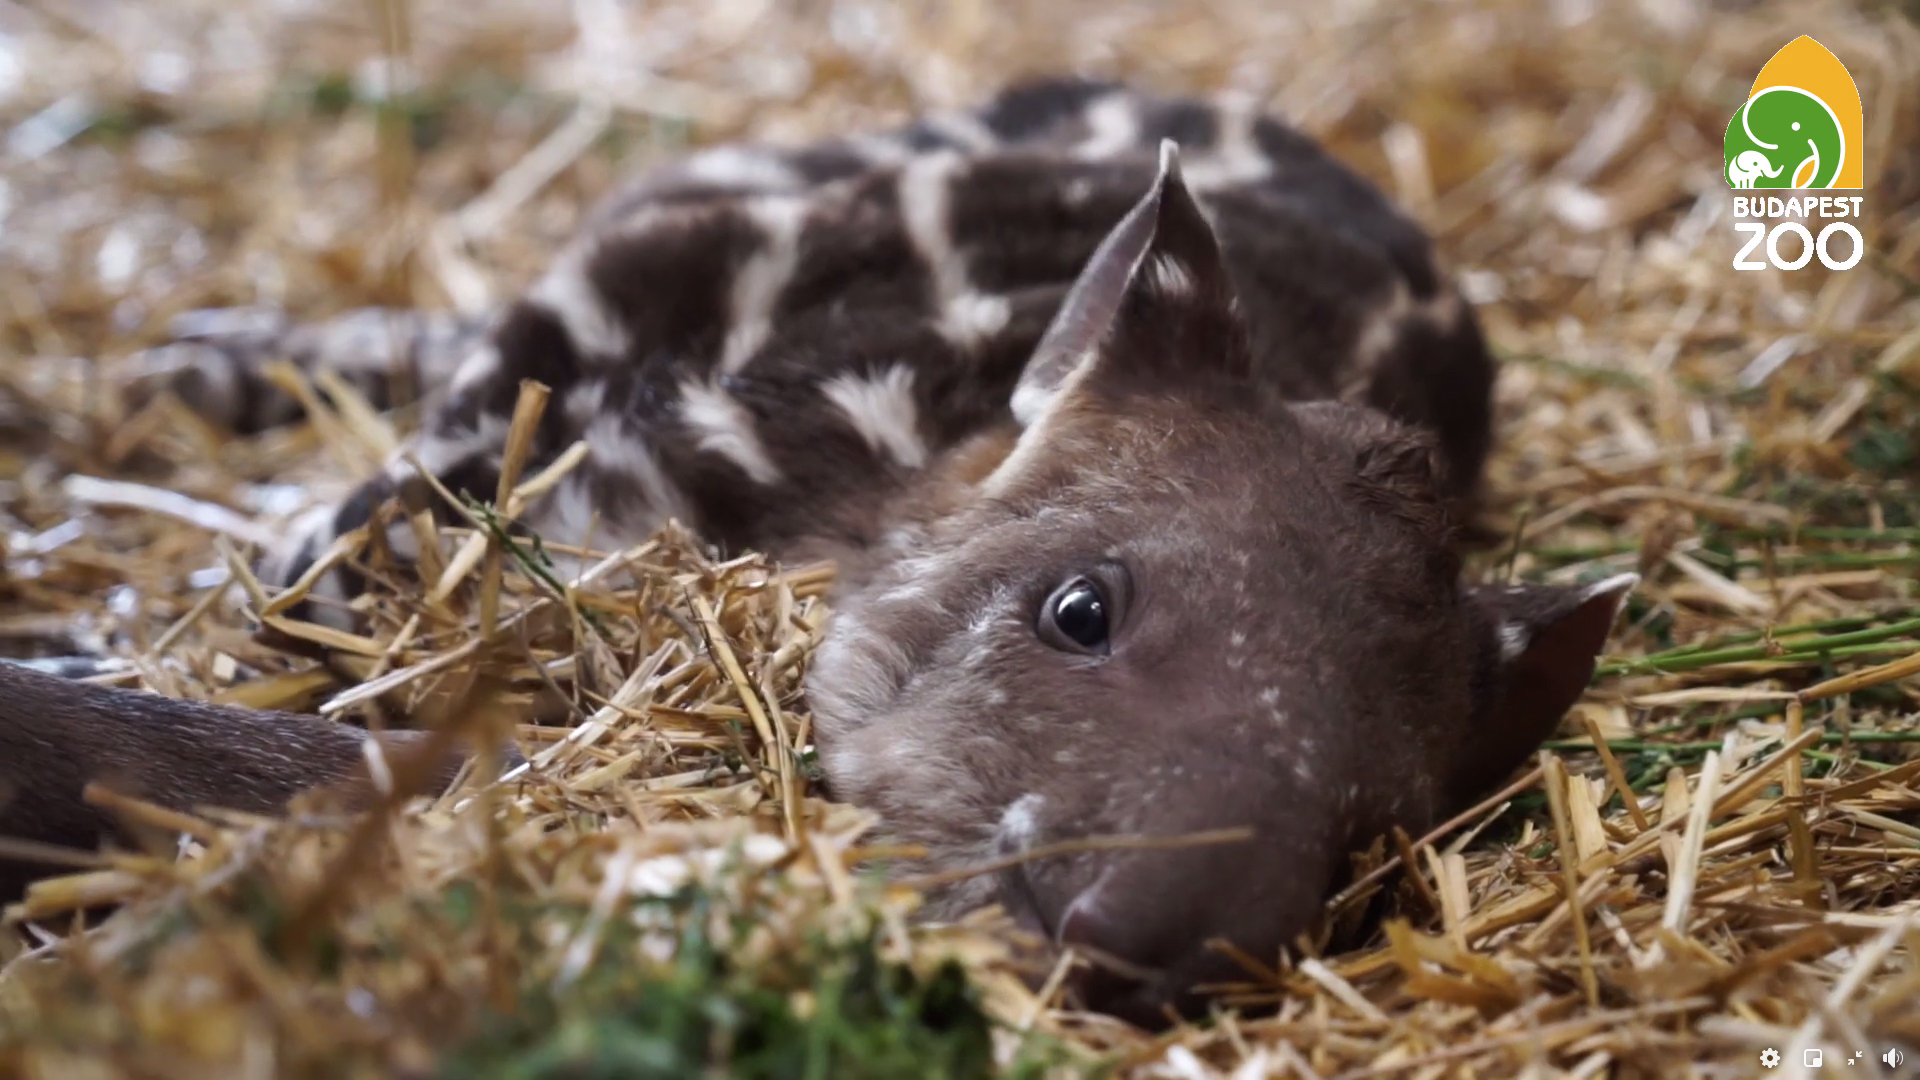 Melyik nevet adná a cuki tapírbébinek?